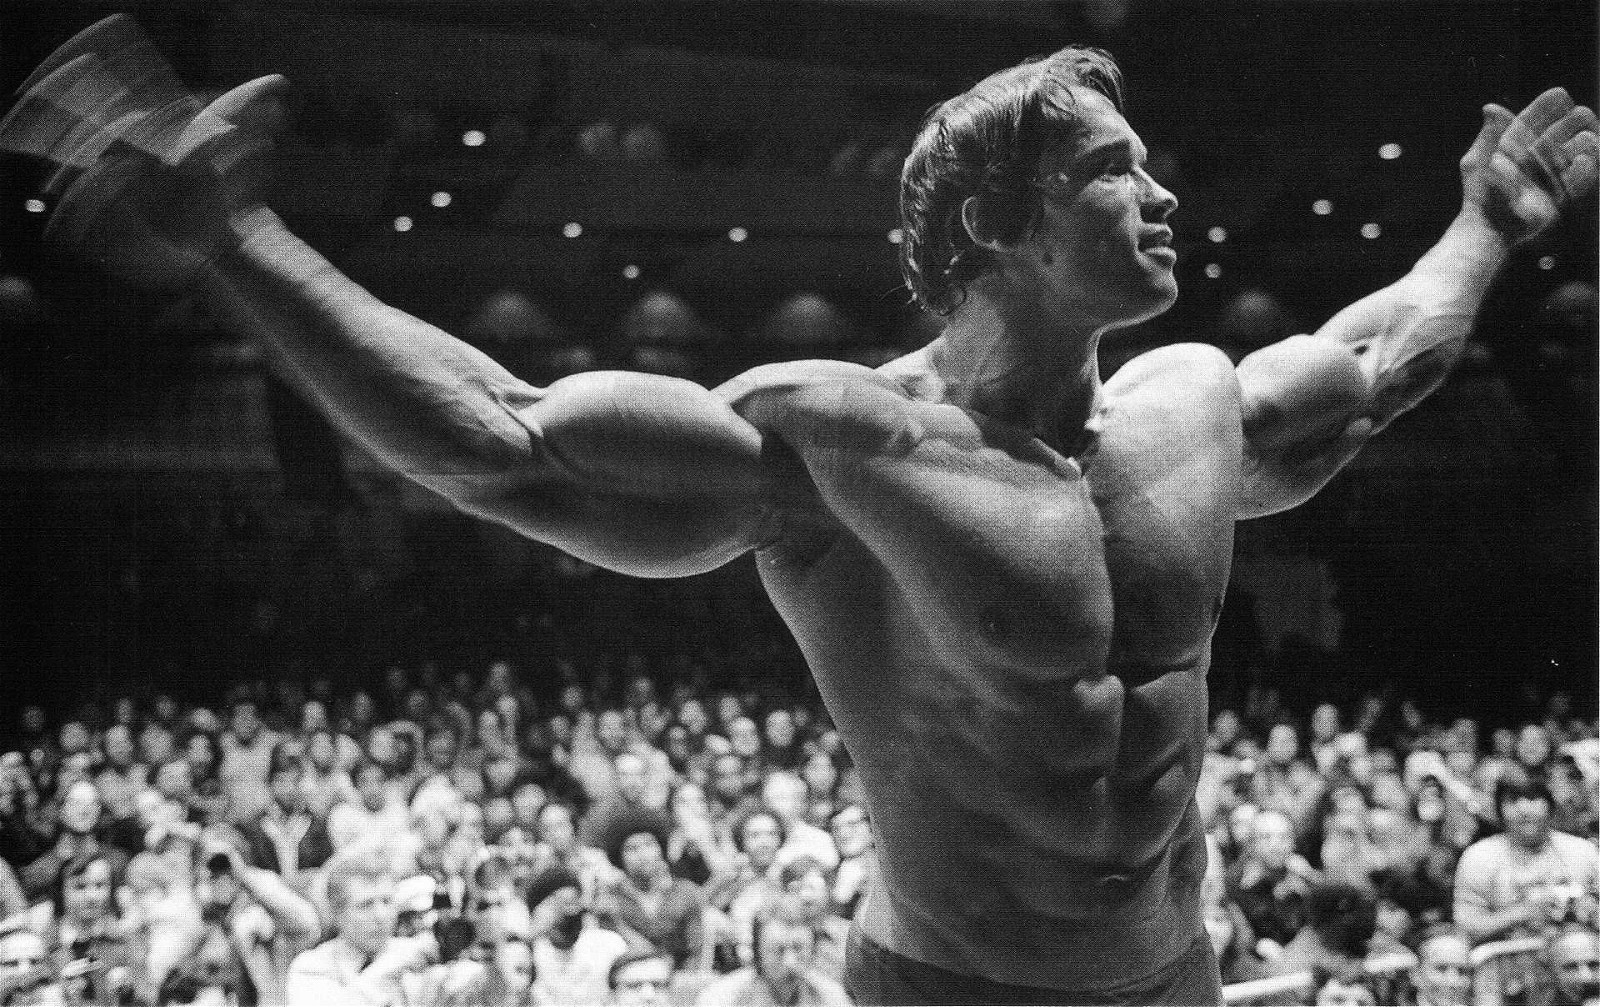 Arnold Schwarzenegger's infamous physique